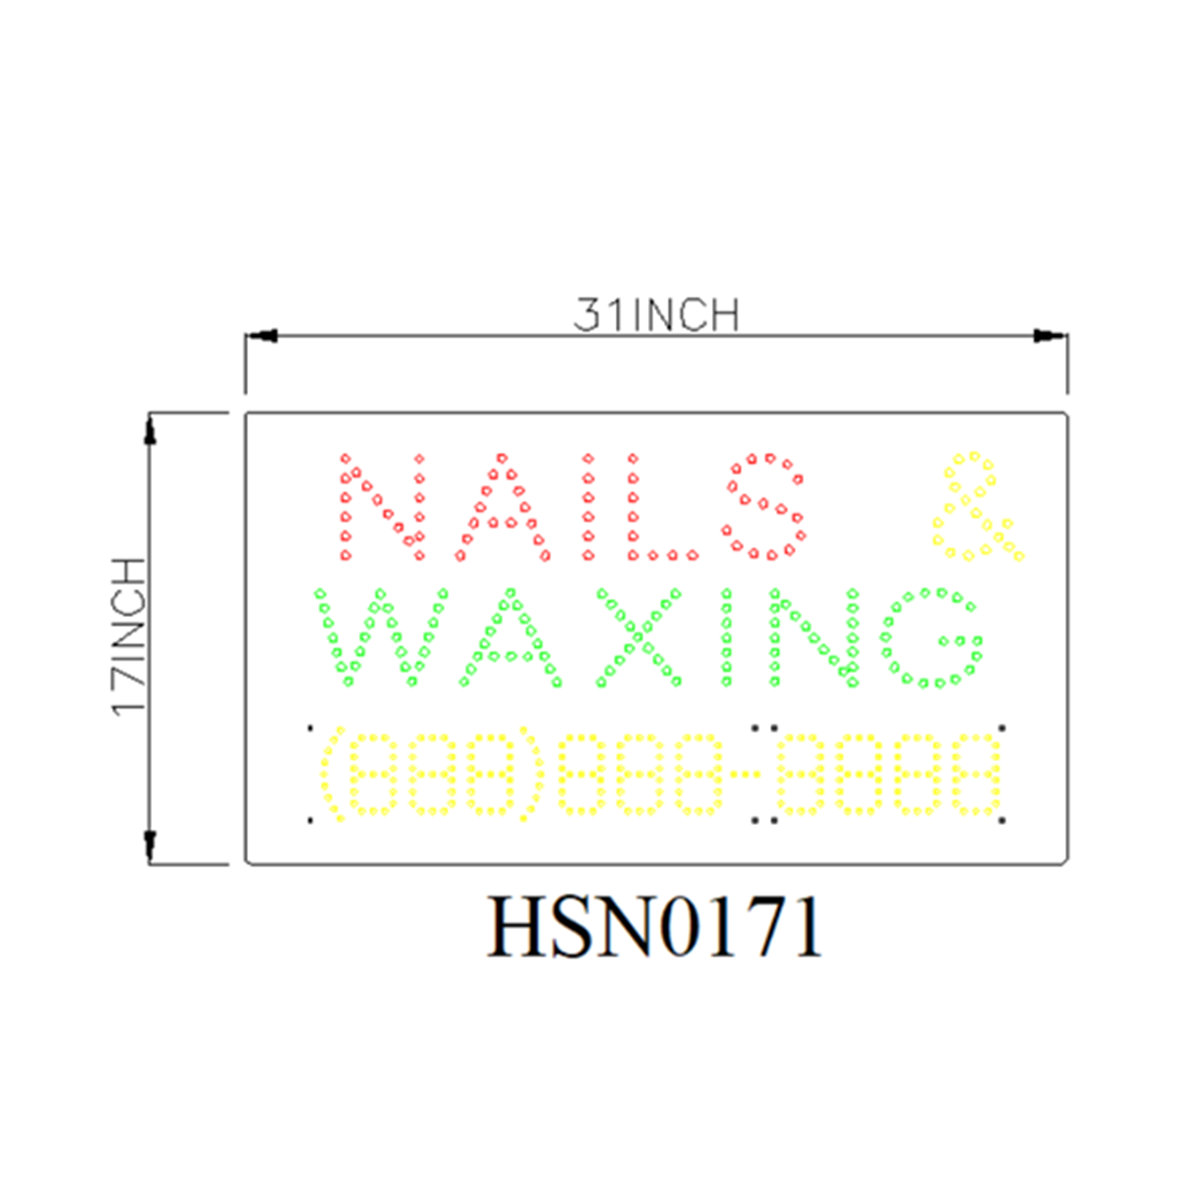 nails waxing large sign